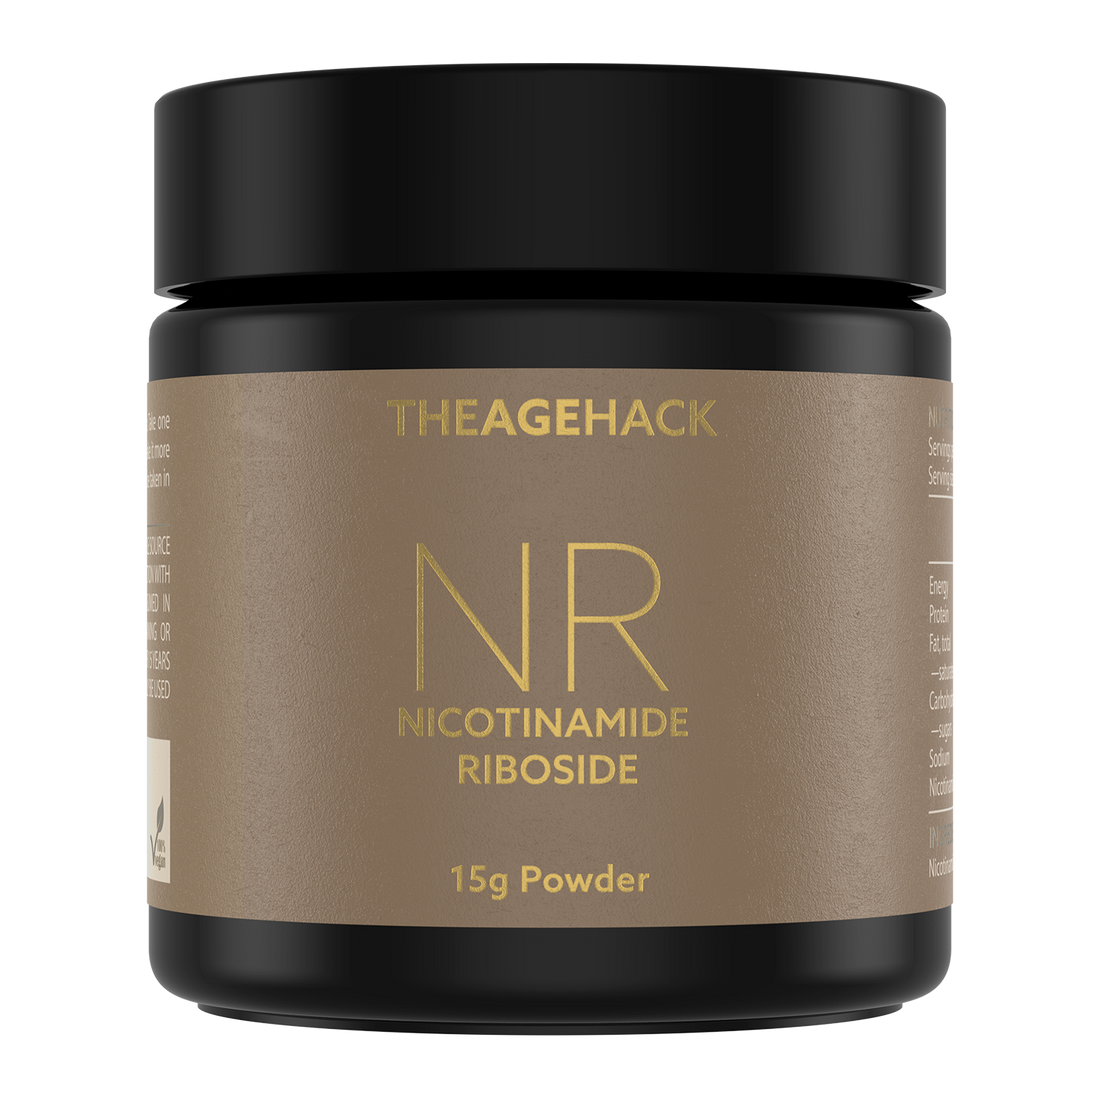 Nicotinamide Riboside NR Powder by THEAGEHACK